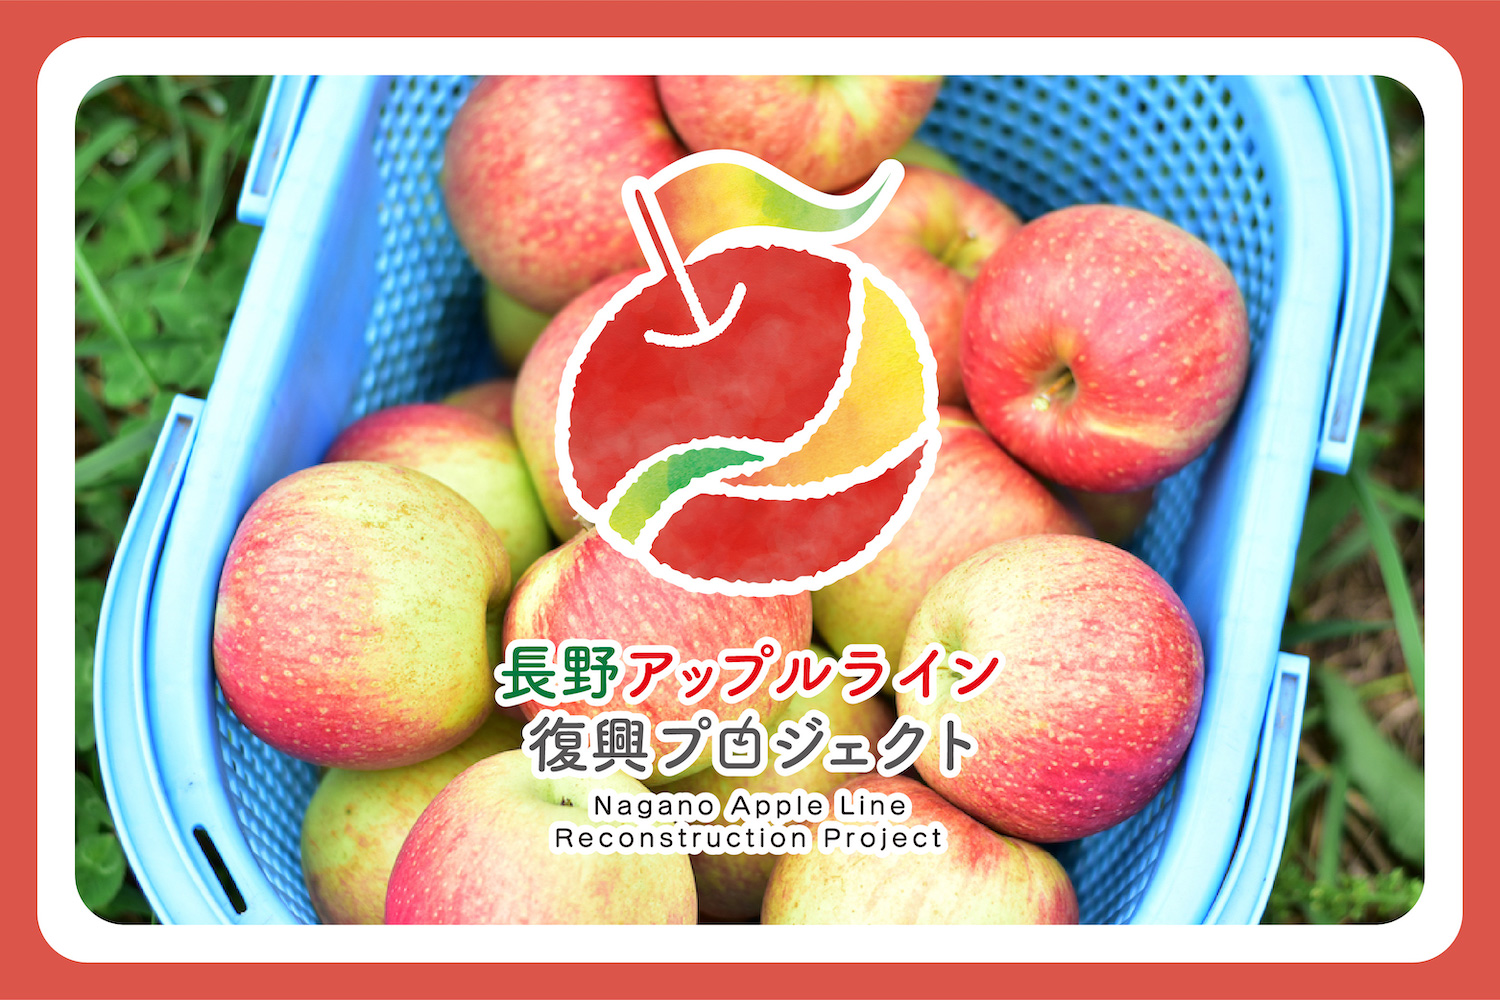 台風19号により浸水した信州りんごの名産地・アップルラインの復興支援団体を発足。11月12日よりクラウドファンディング《目標金額1,000万円》を開始します。